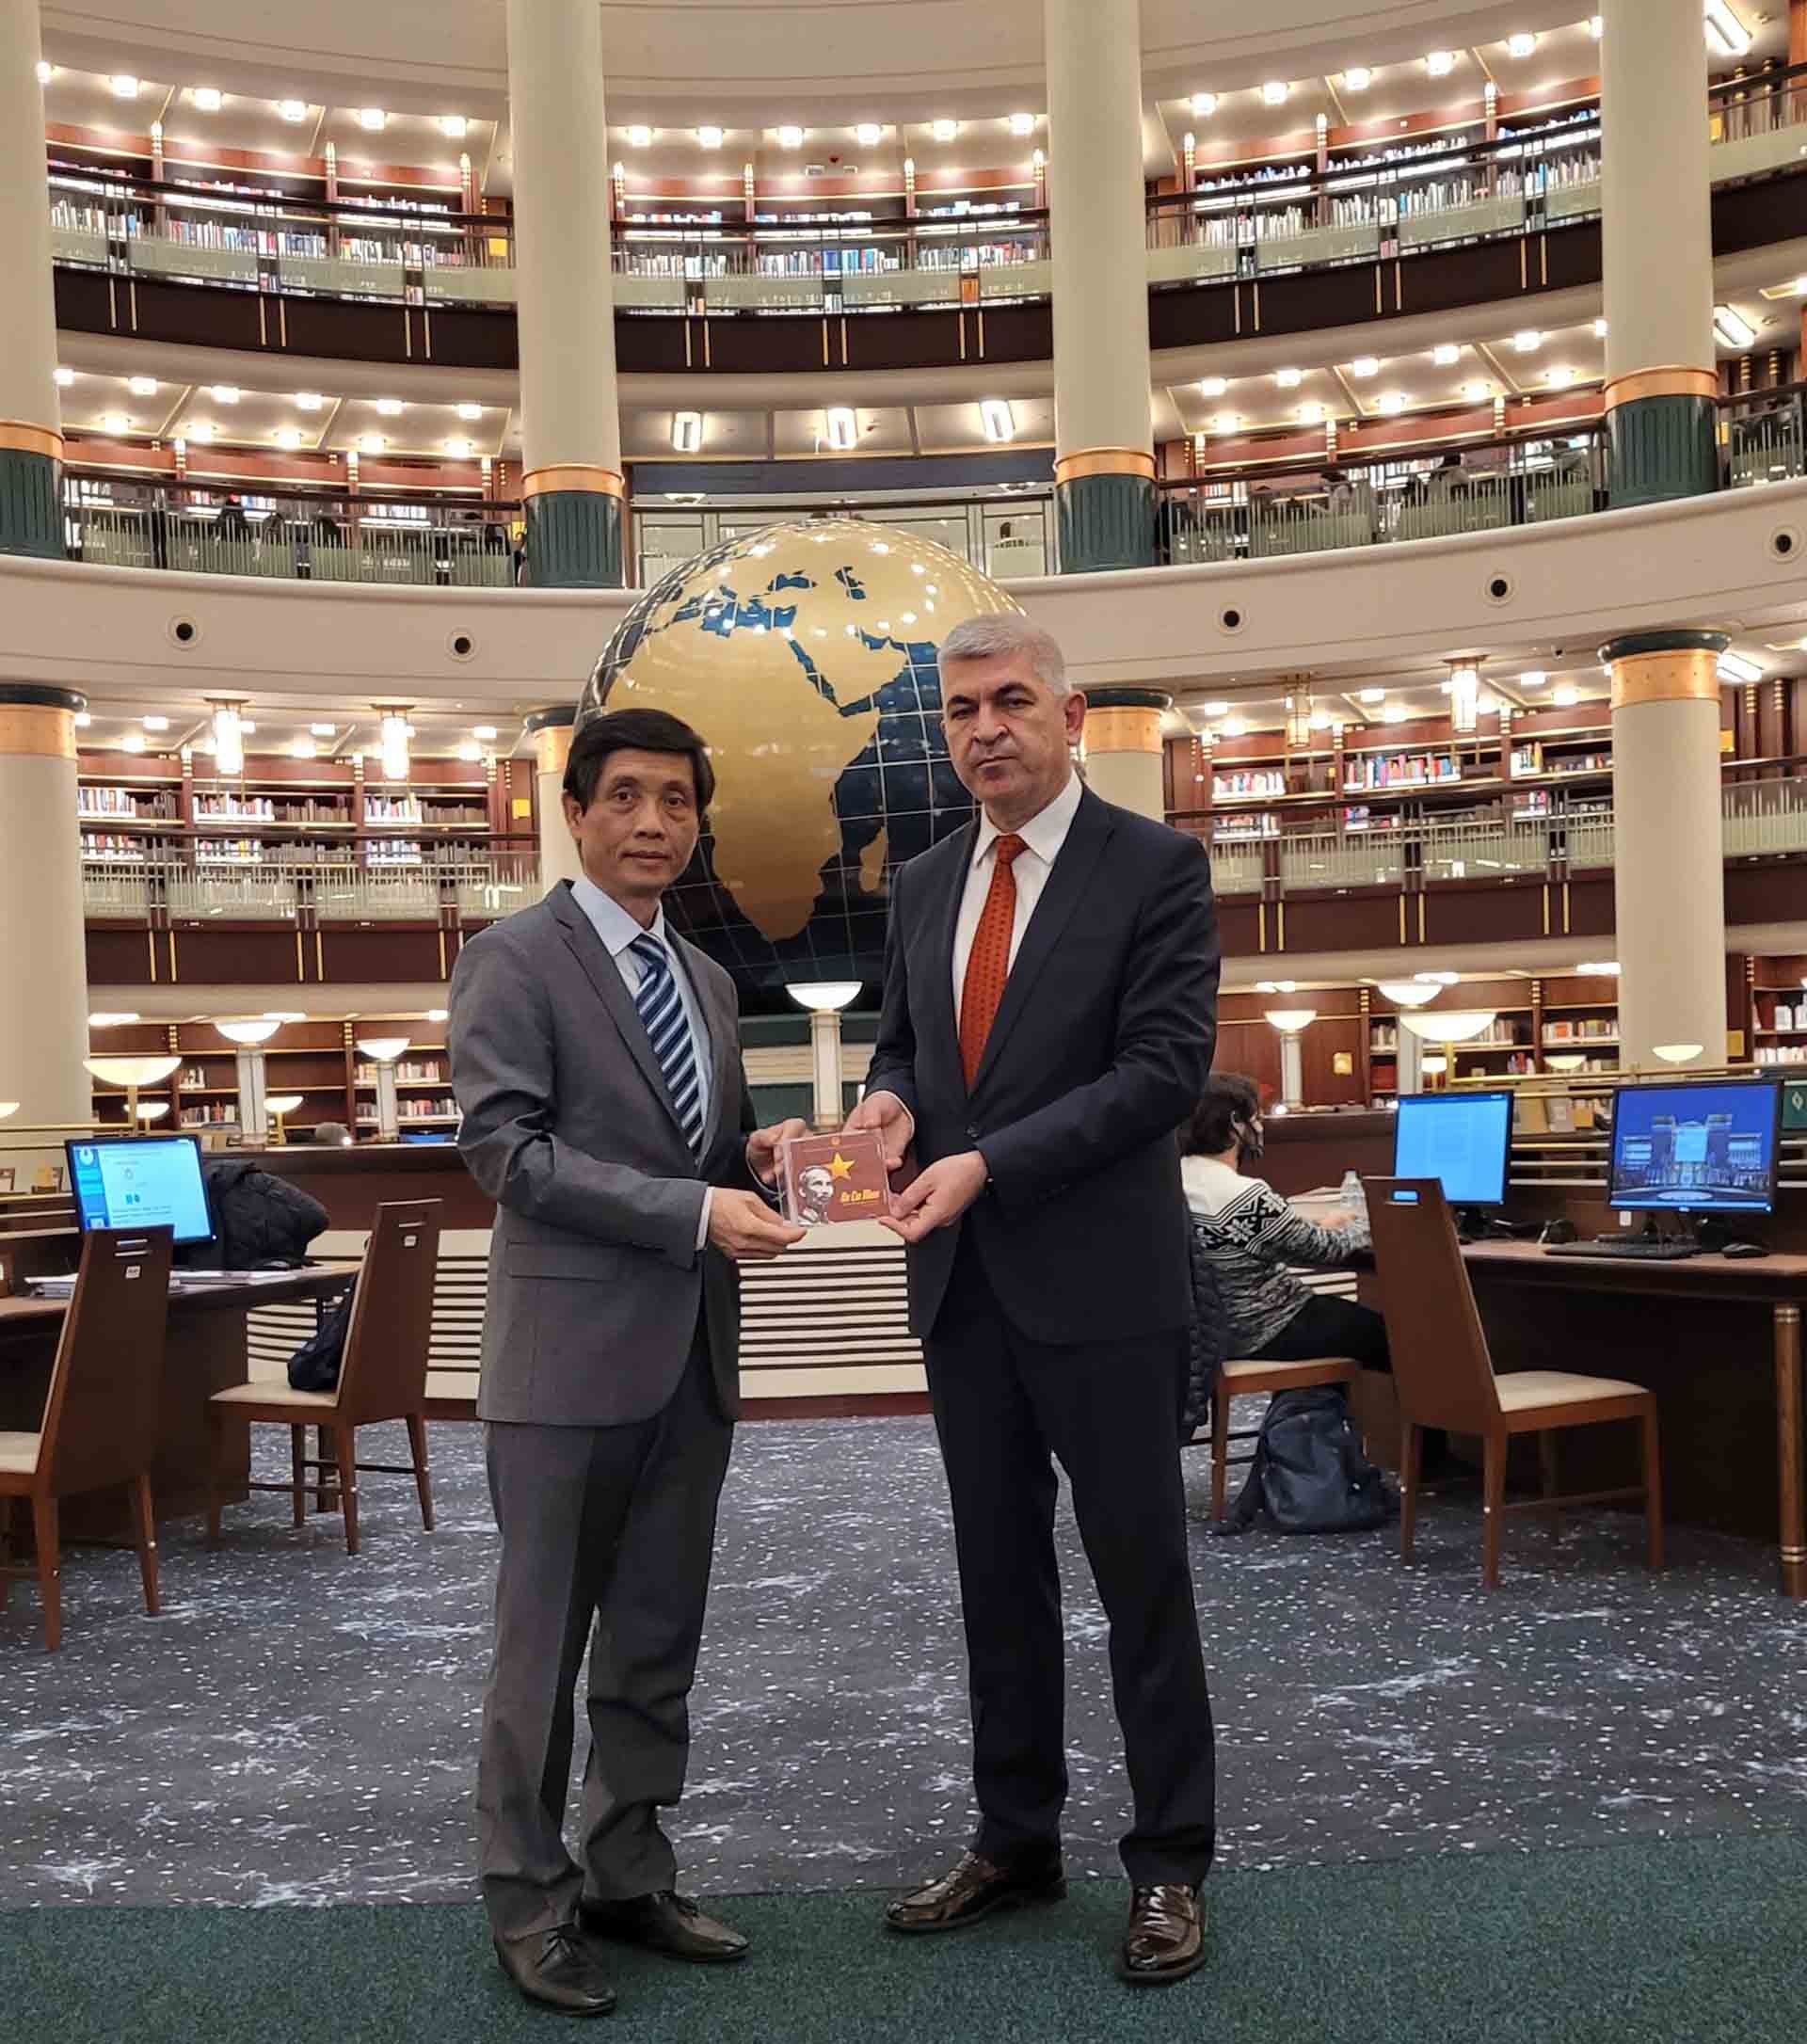 Trao tặng đĩa DVD phim về Chủ tịch Hồ Chí Minh cho Thư viện Phủ Tổng thống Thổ Nhĩ Kỳ